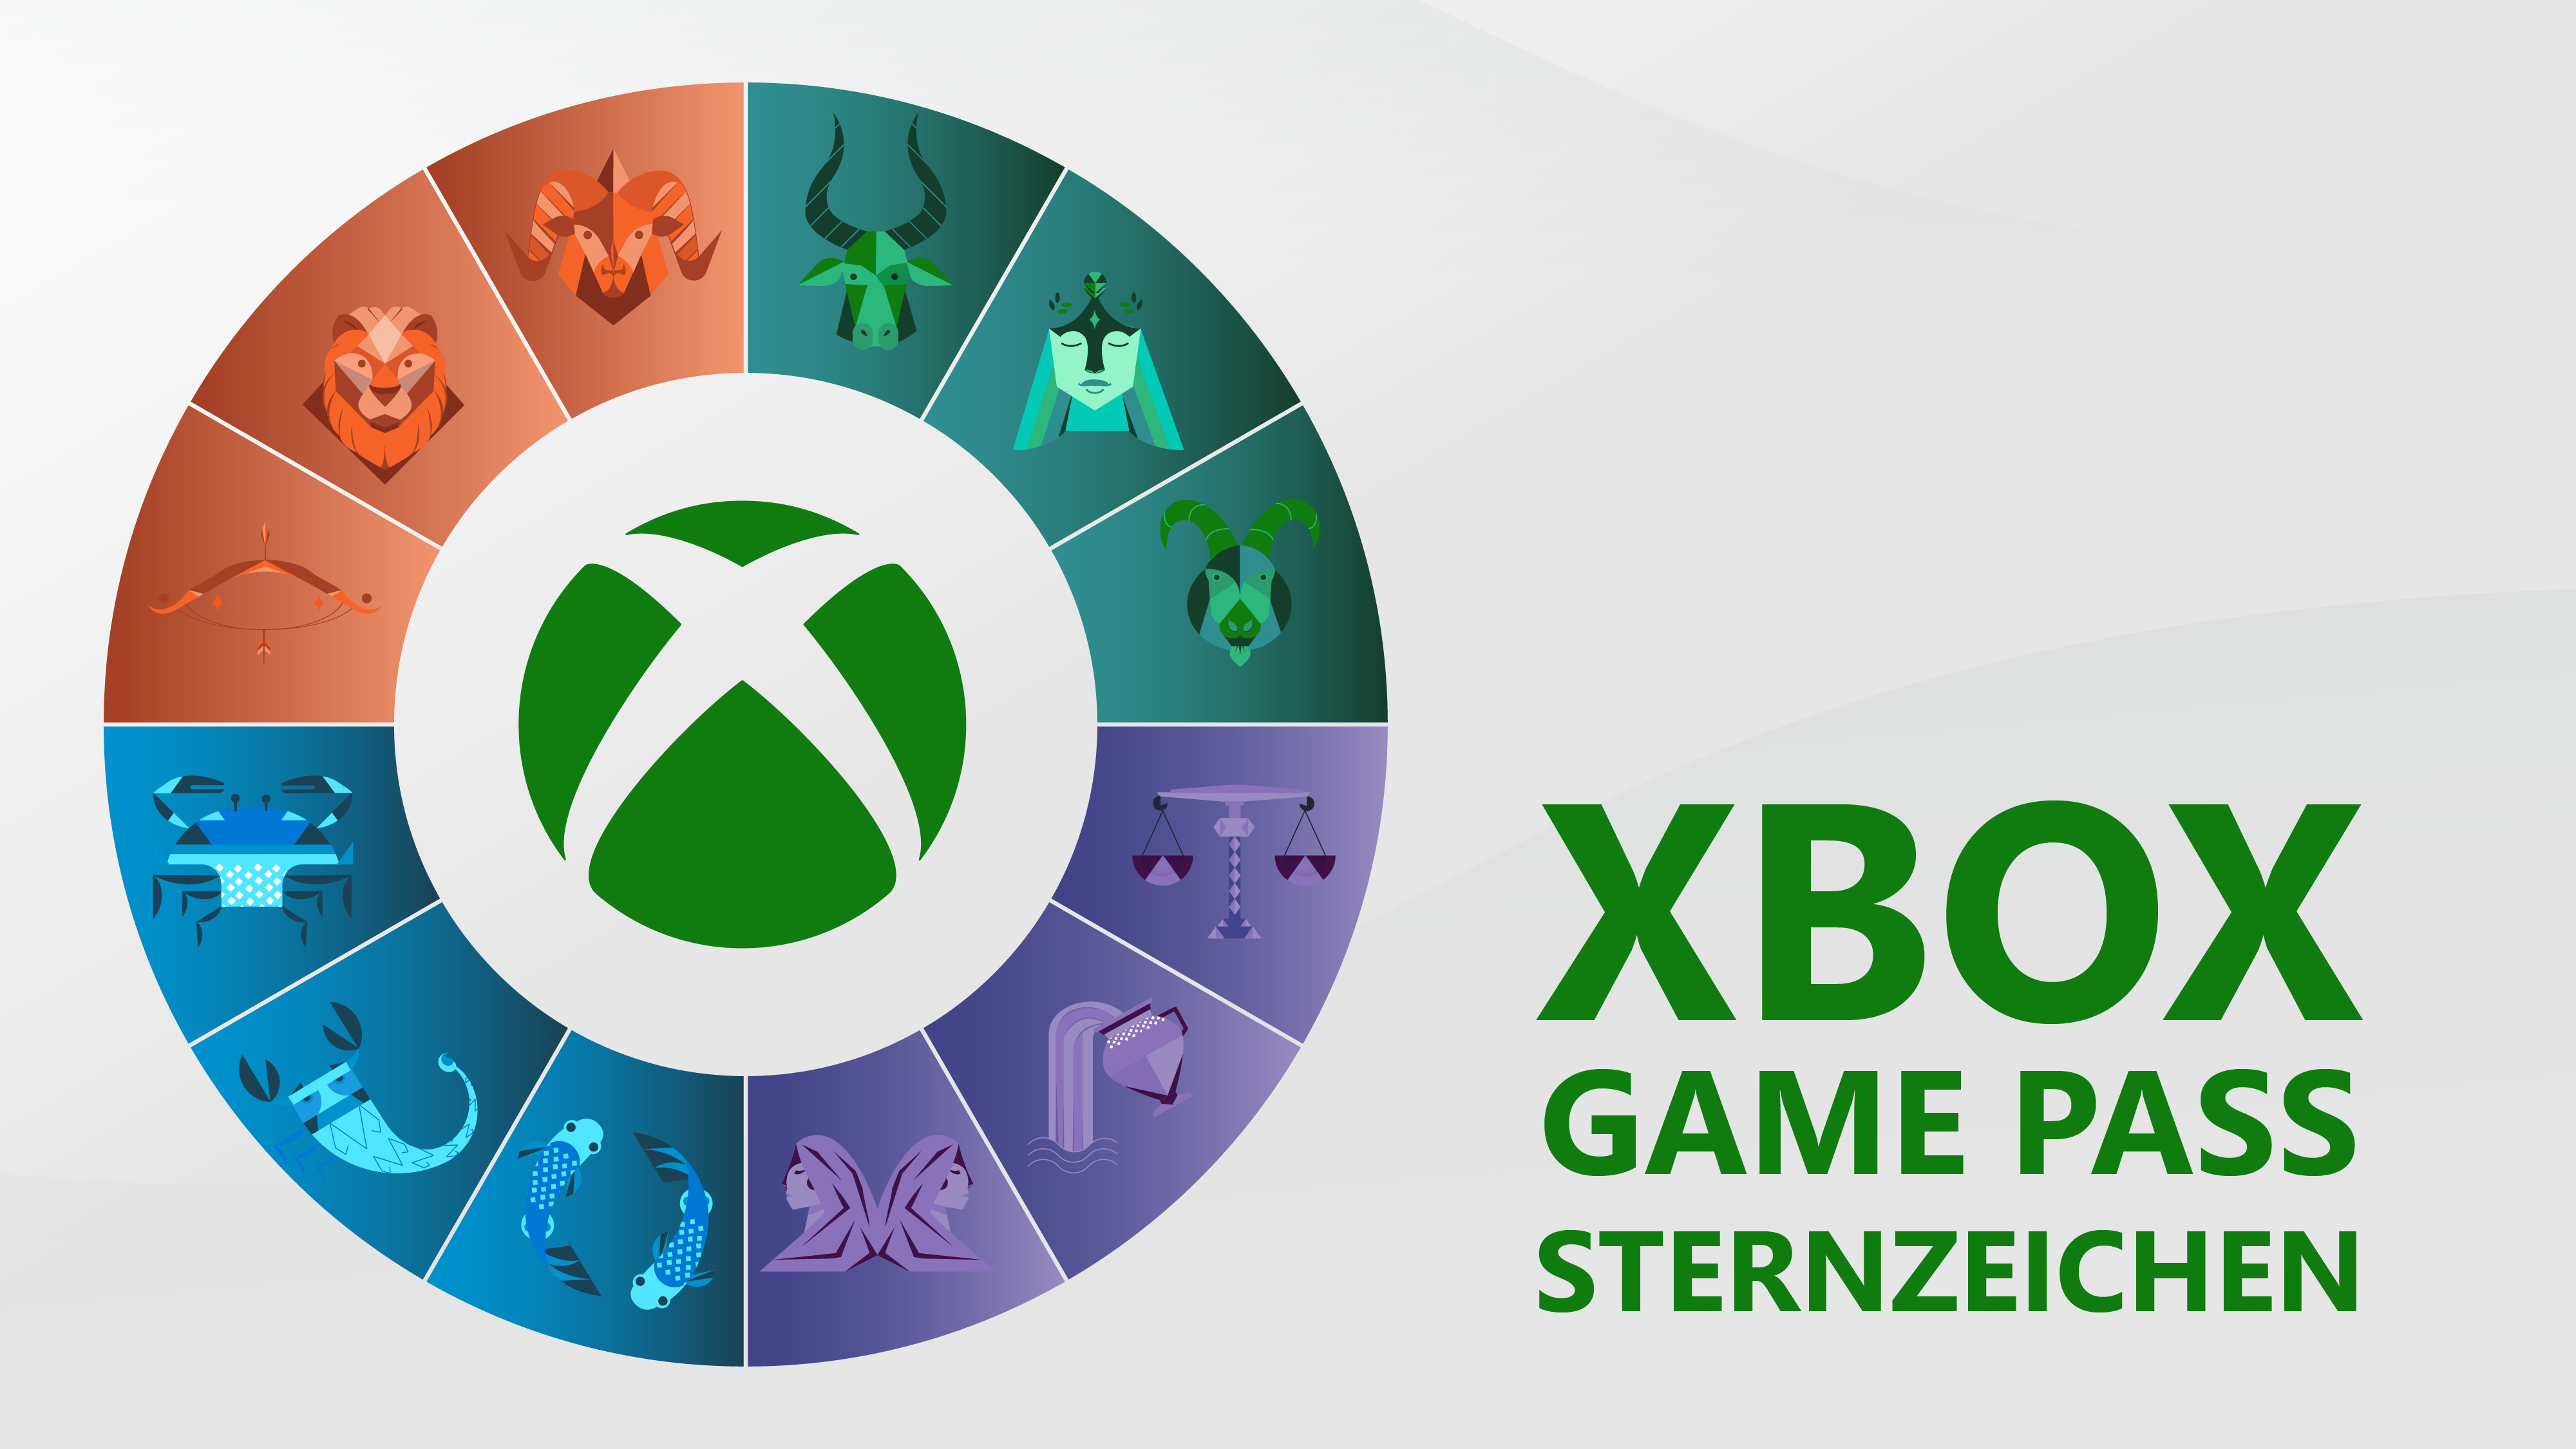 Xbox Game Pass Sternzeichen: Die besten Spiele im Game Pass anhand der Sterne finden HERO